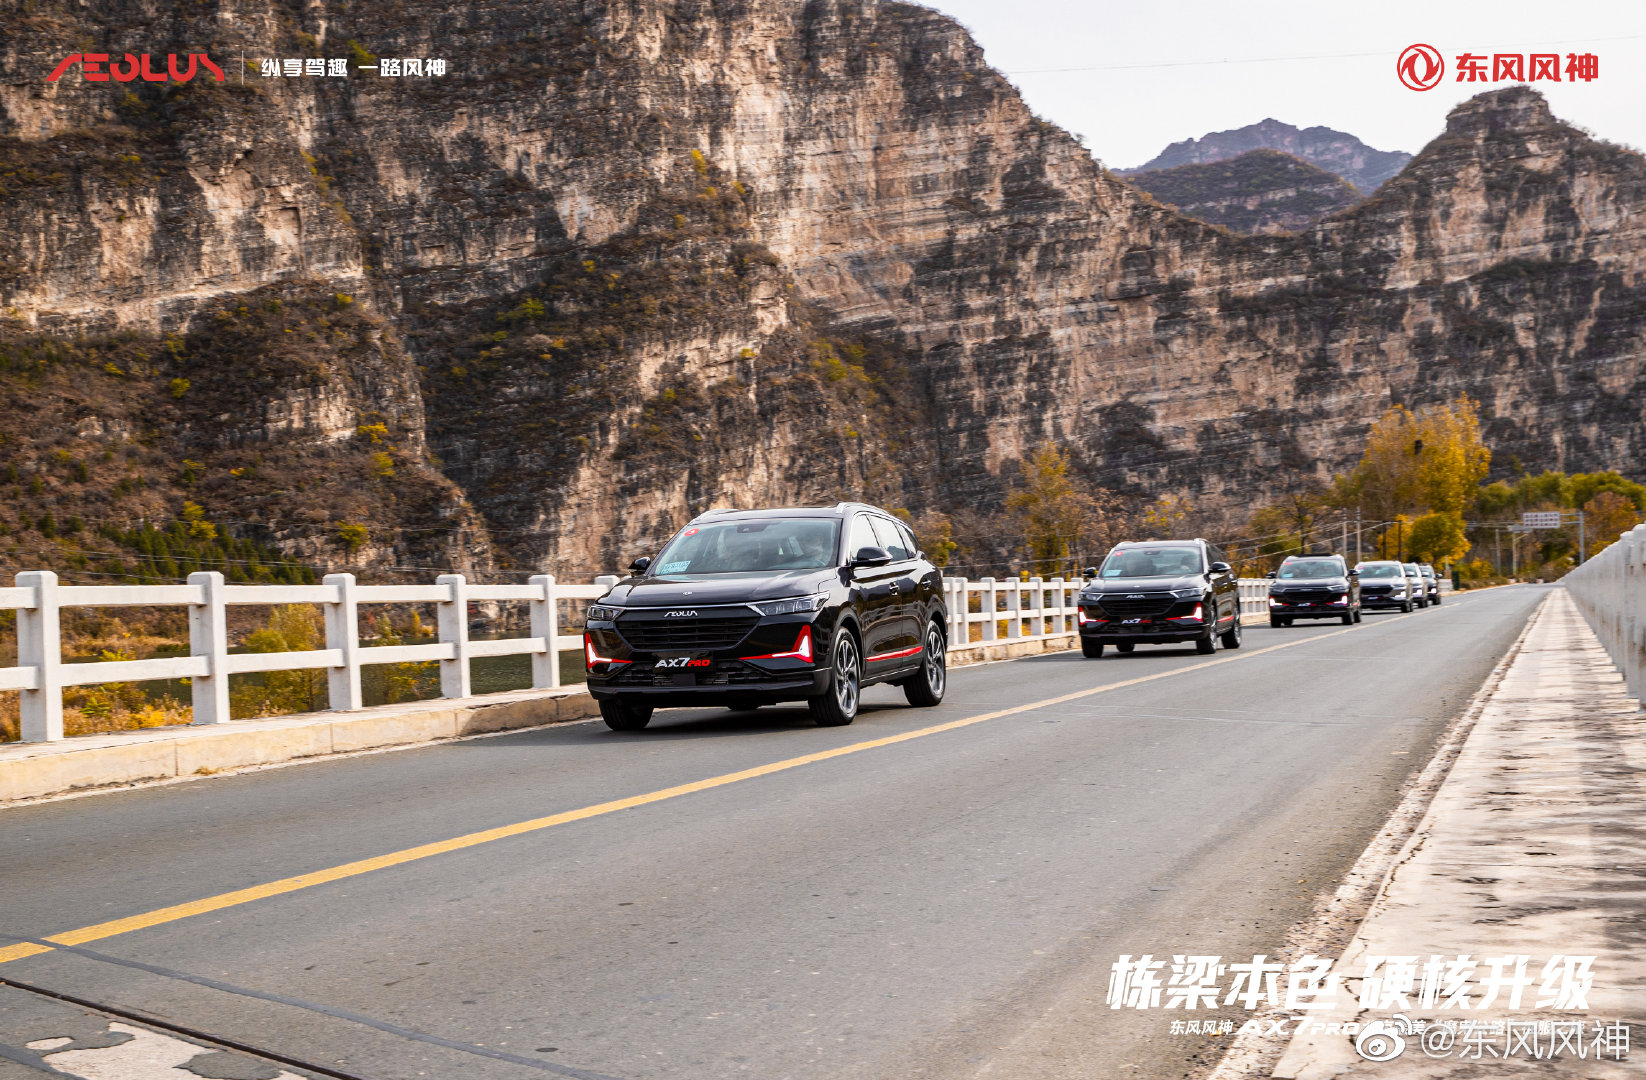 栋梁本色，硬核升级 东风风神AX7 PRO征服北京最美“魔鬼公路”